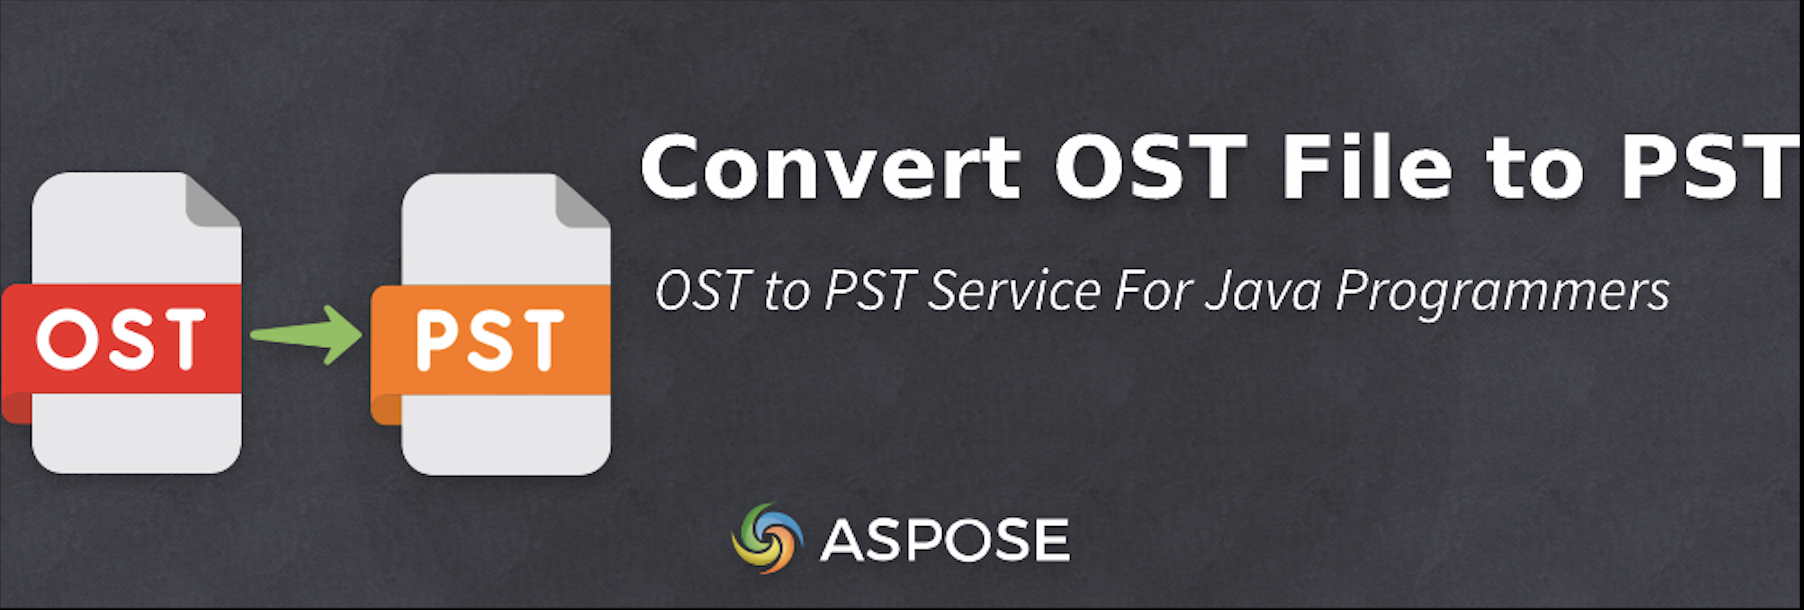 Chuyển đổi tệp OST sang PST trong Java - Trình chuyển đổi OST sang PST miễn phí